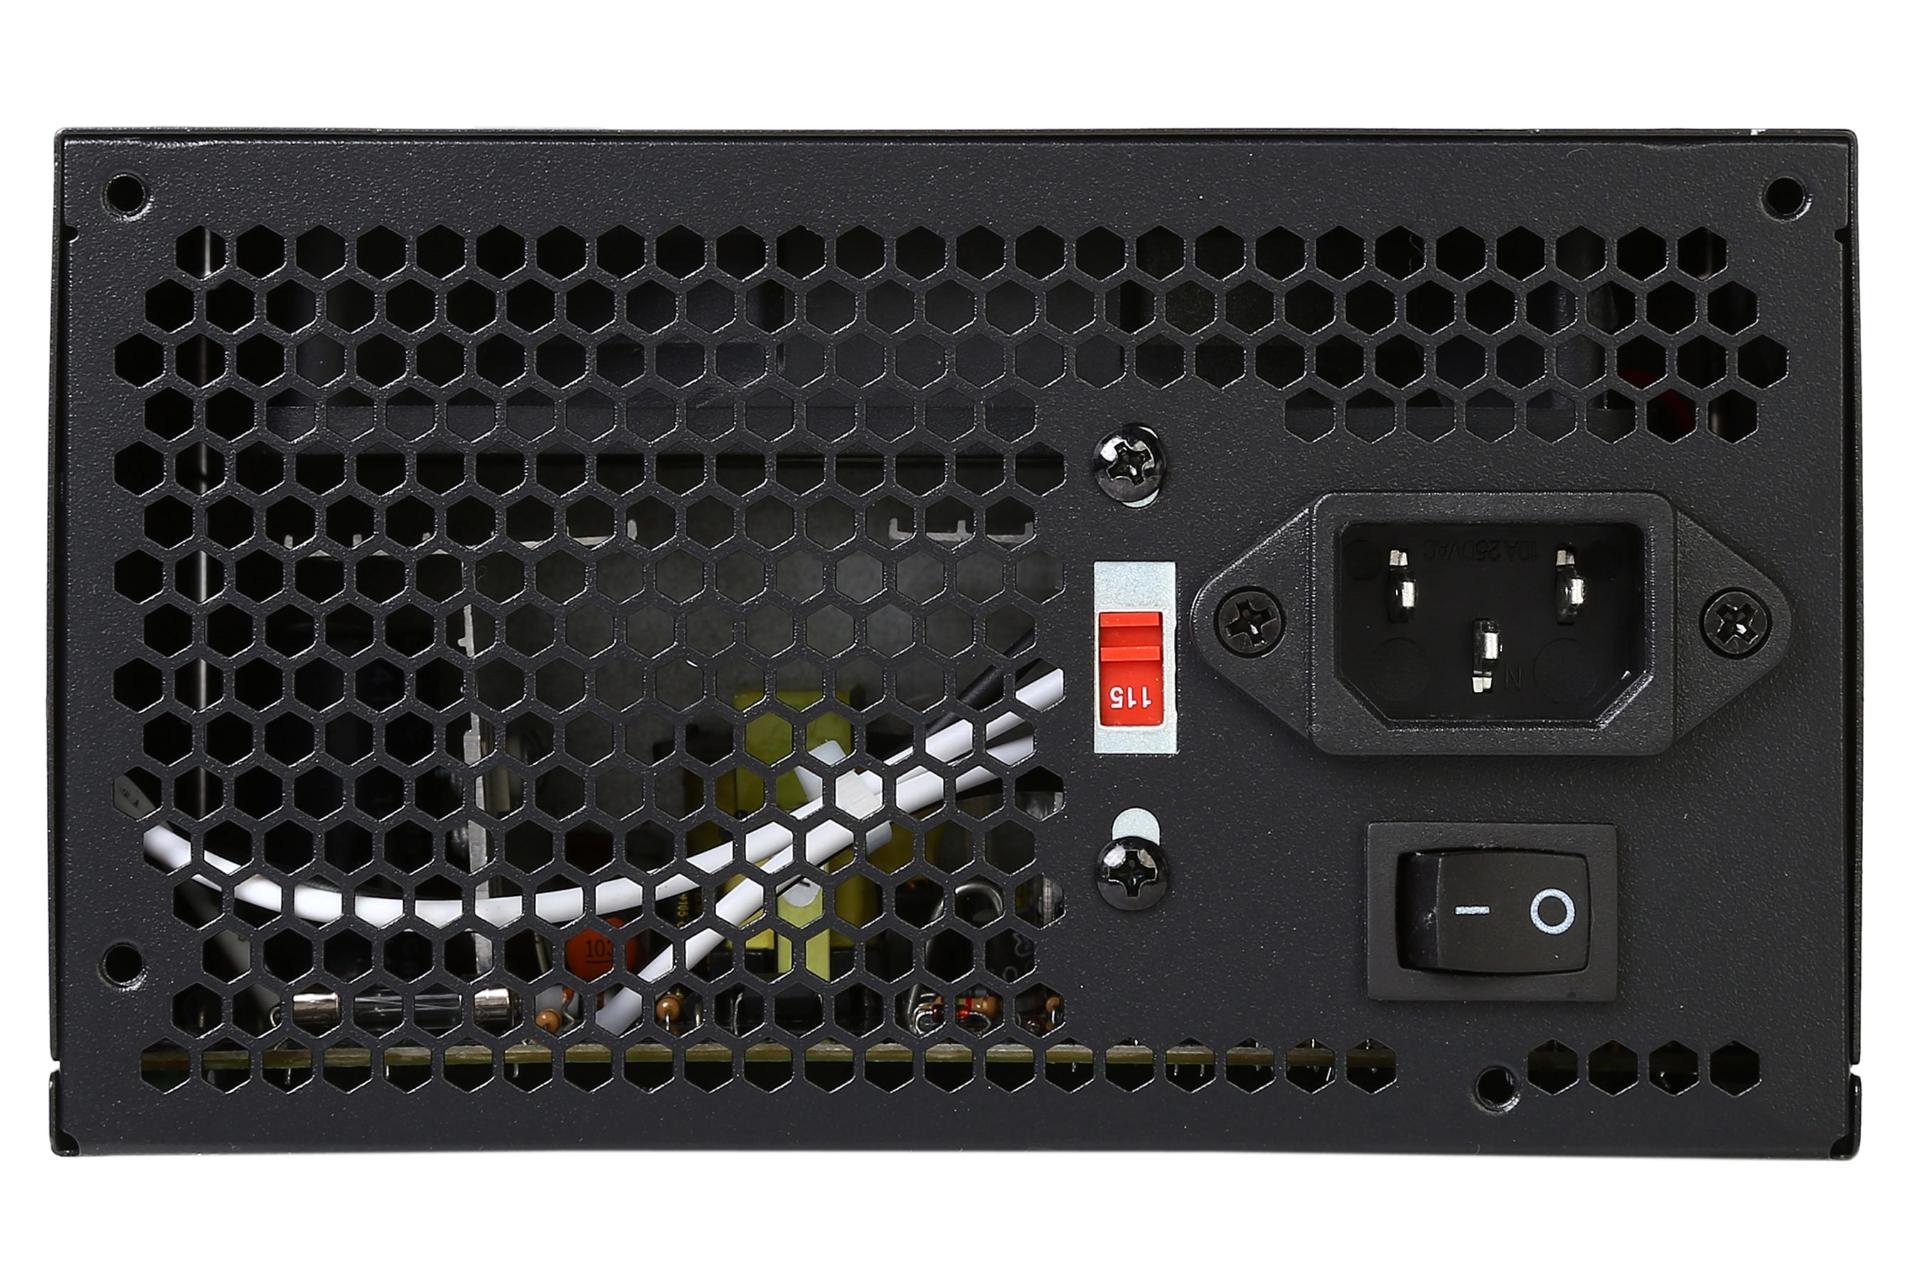 کلید پاور پاور کامپیوتر ریدمکس RX-400XT با توان 400 وات و تغییر ولتاژ